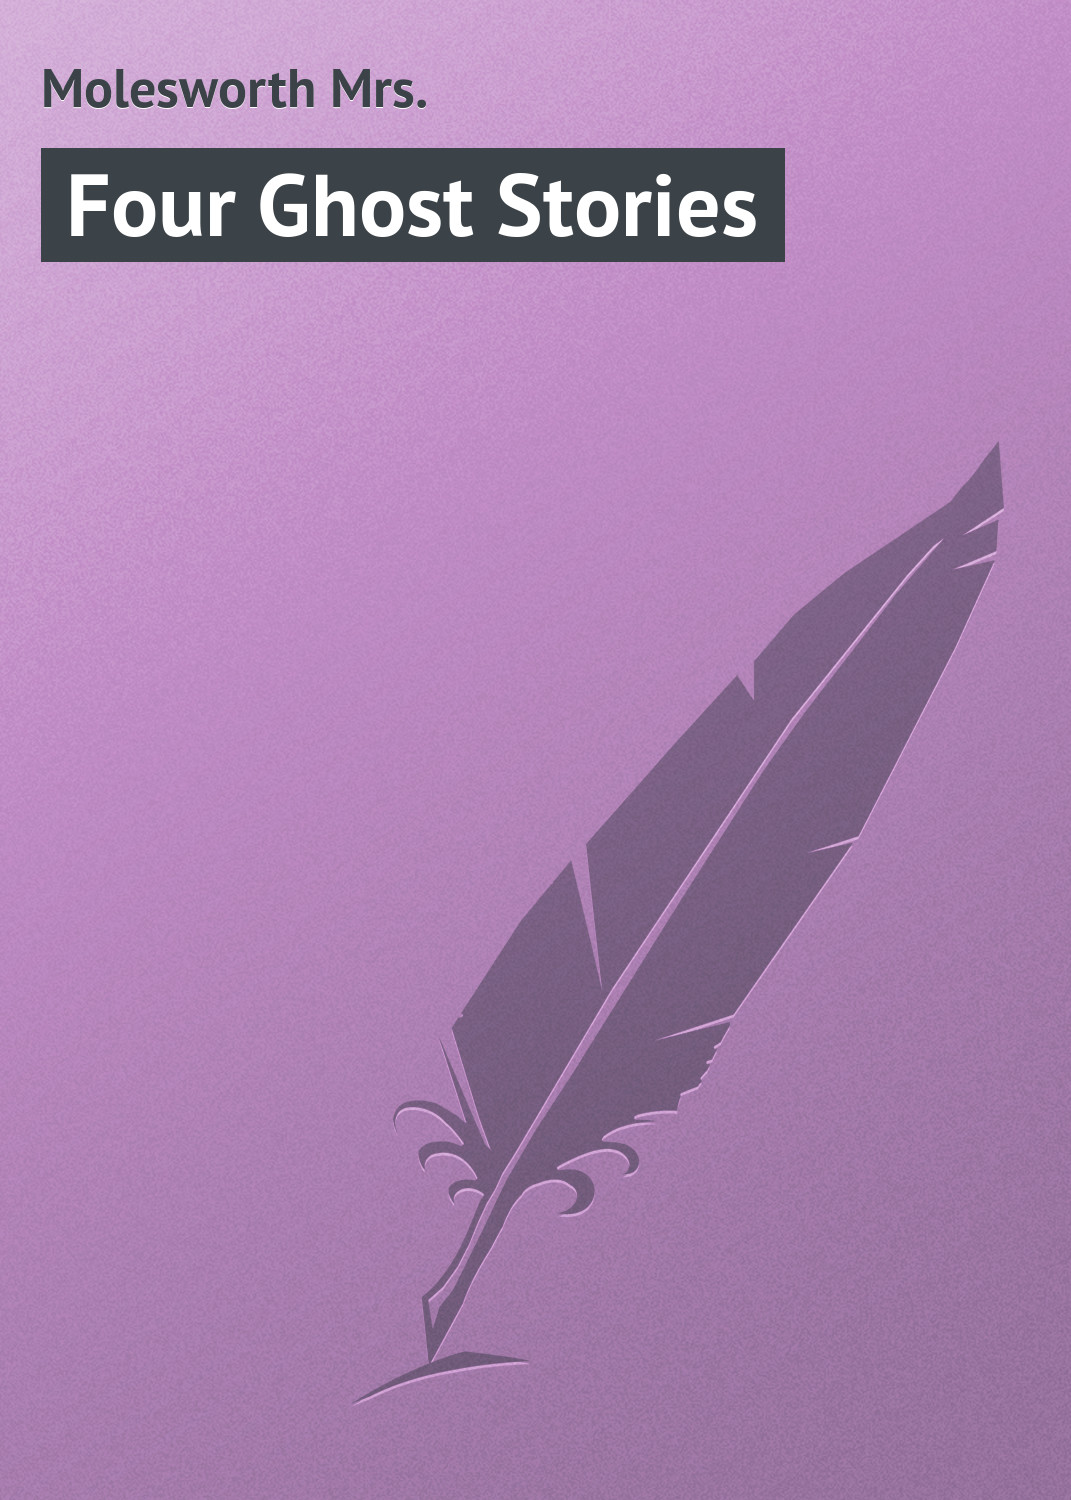 Книга Four Ghost Stories из серии , созданная Mrs. Molesworth, может относится к жанру Зарубежная классика. Стоимость электронной книги Four Ghost Stories с идентификатором 23165915 составляет 5.99 руб.